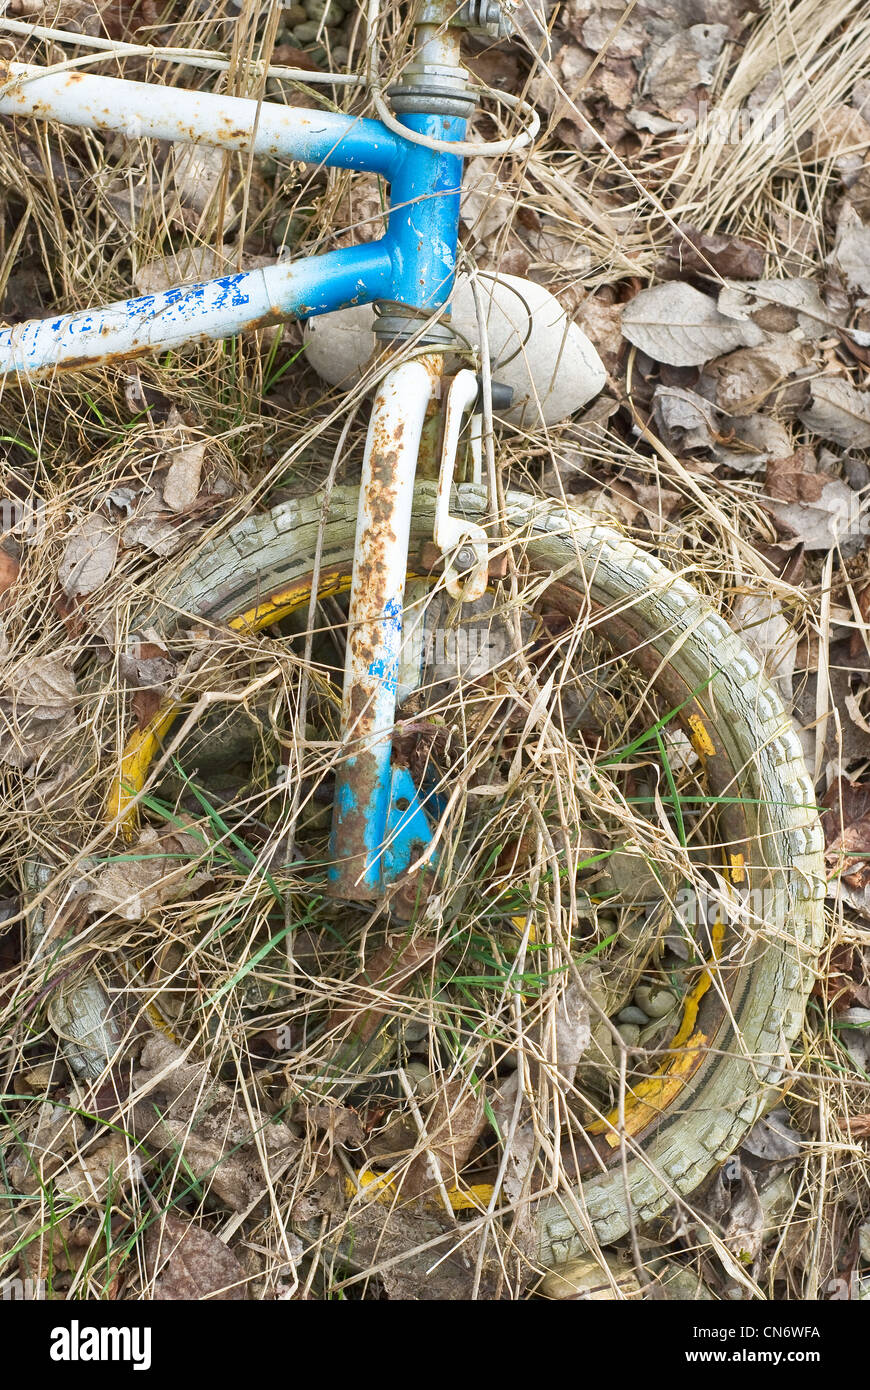 Vieux et abandonné vélo comme tous les jours de la pollution de l'environnement Banque D'Images